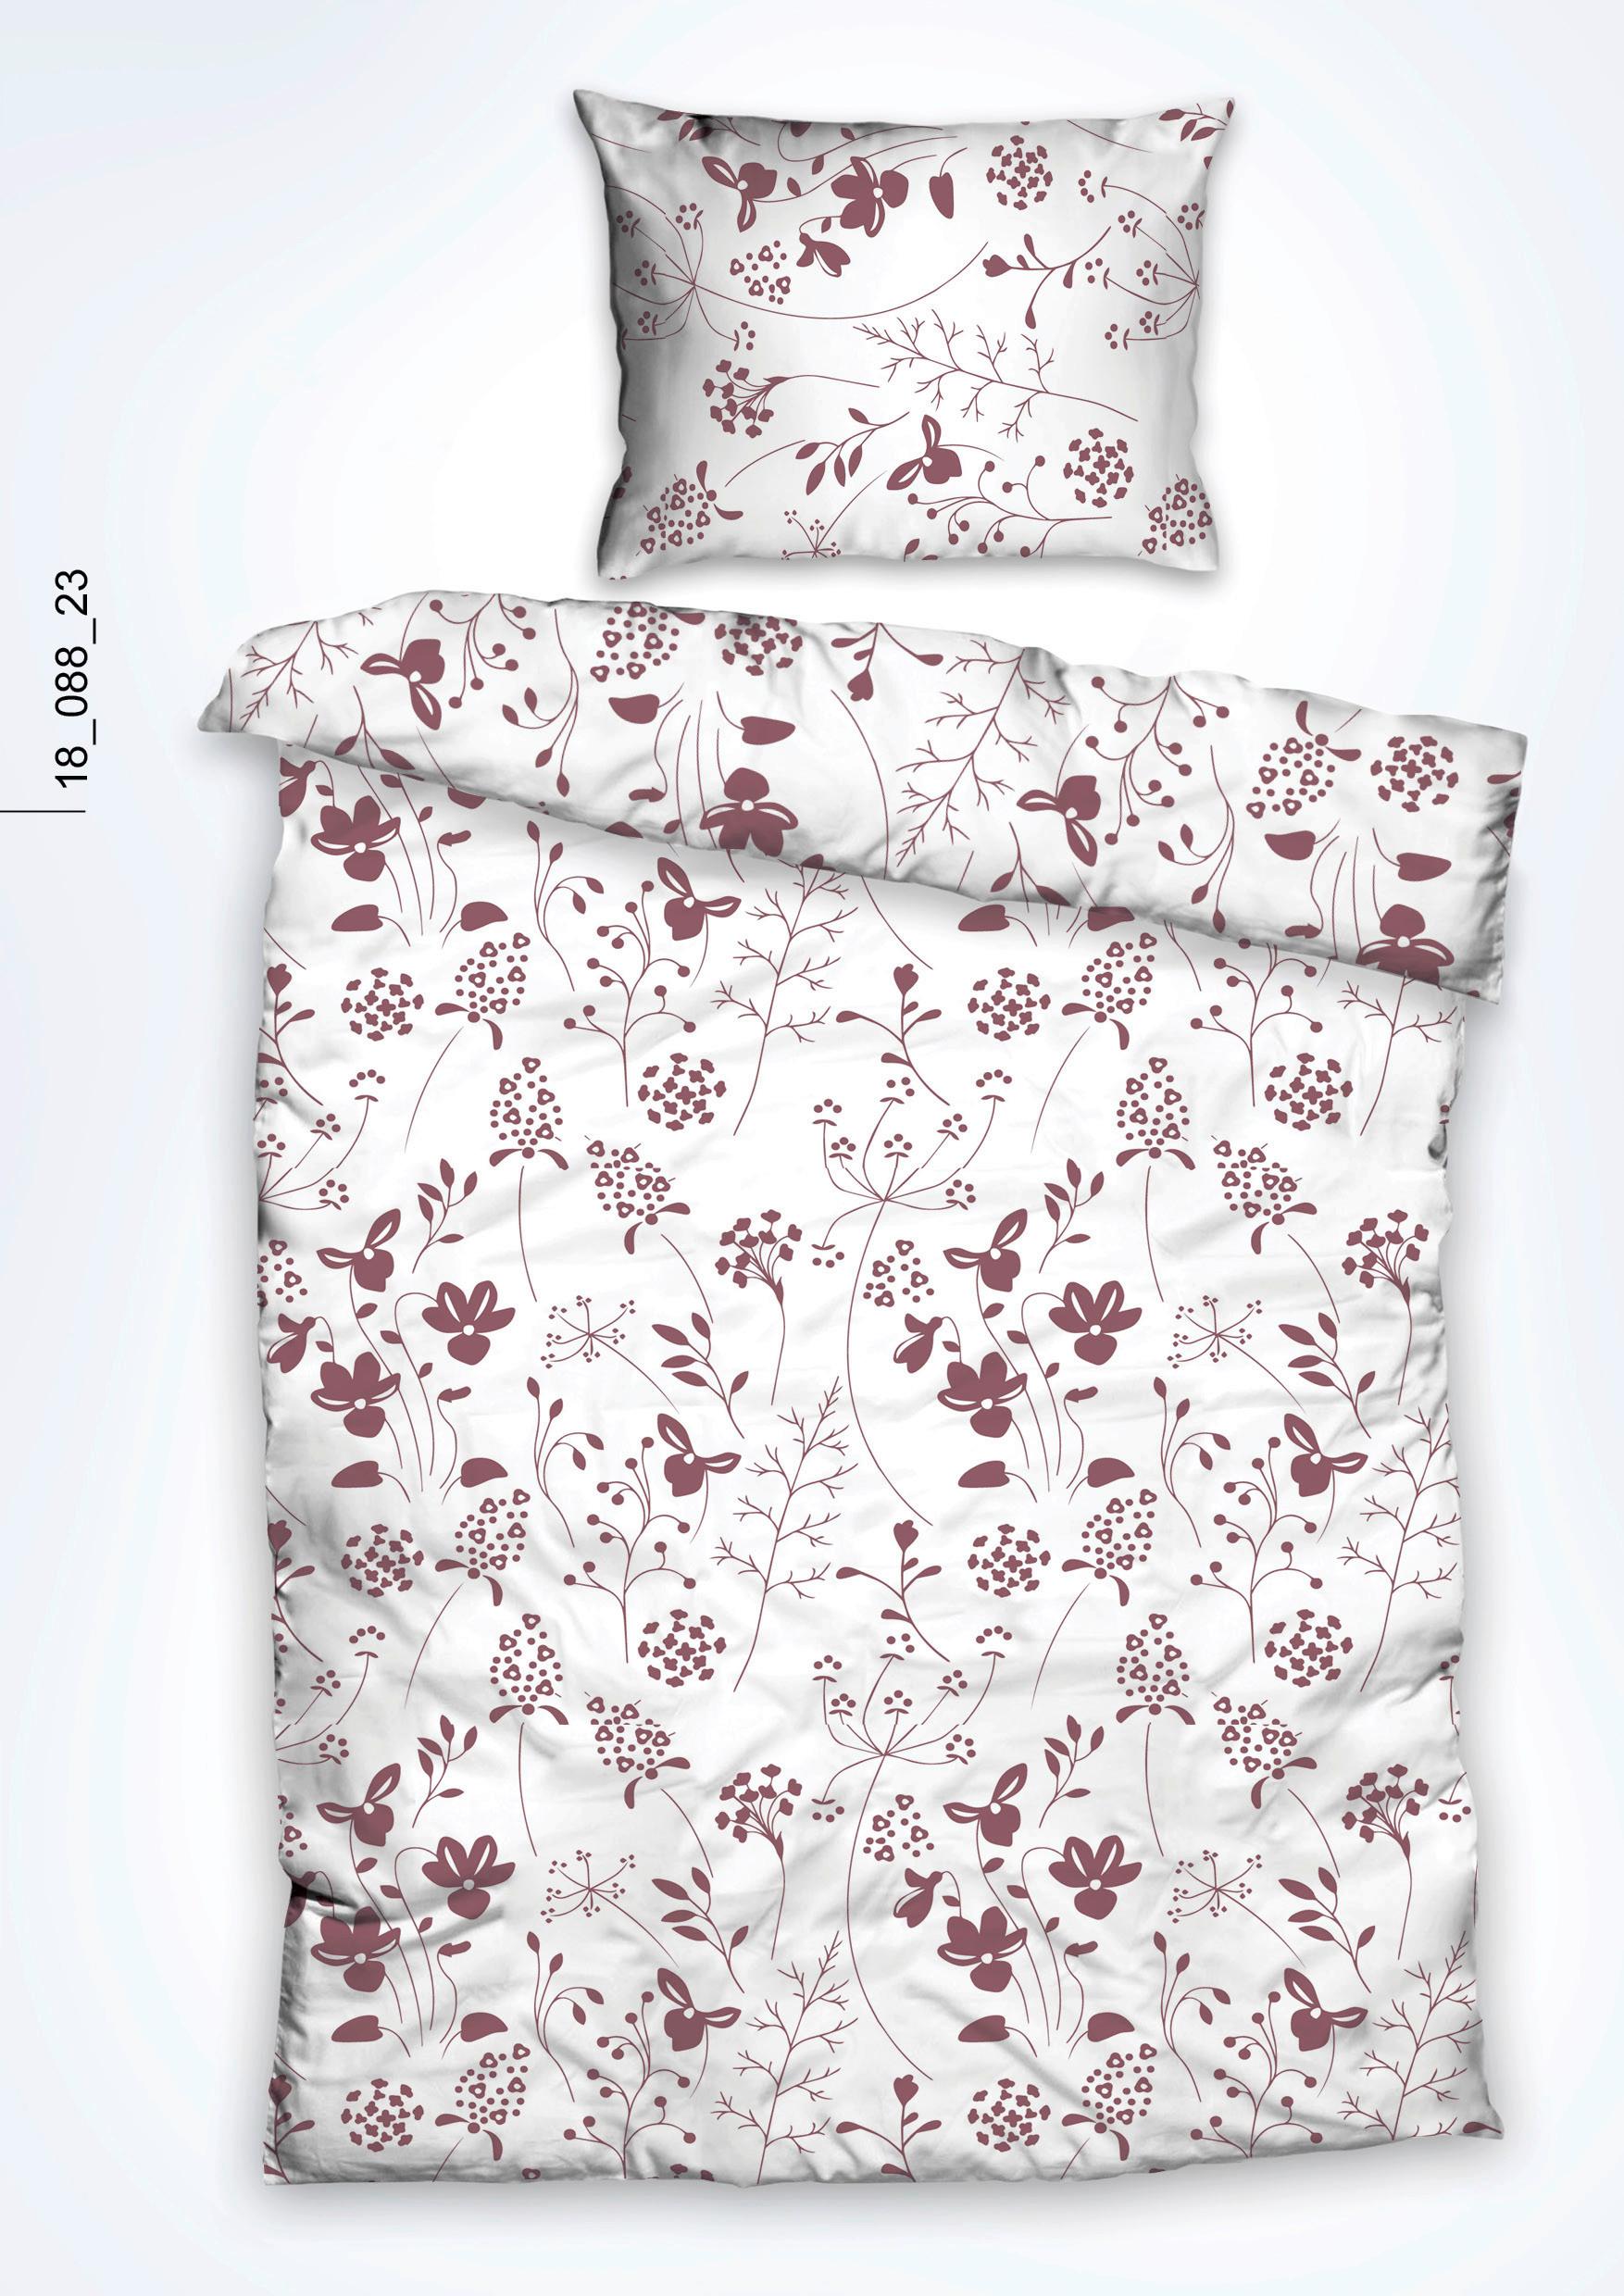 Povlečení Belinda Floral, 140/200cm - bílá/růžová, Moderní, textil (140/200cm)